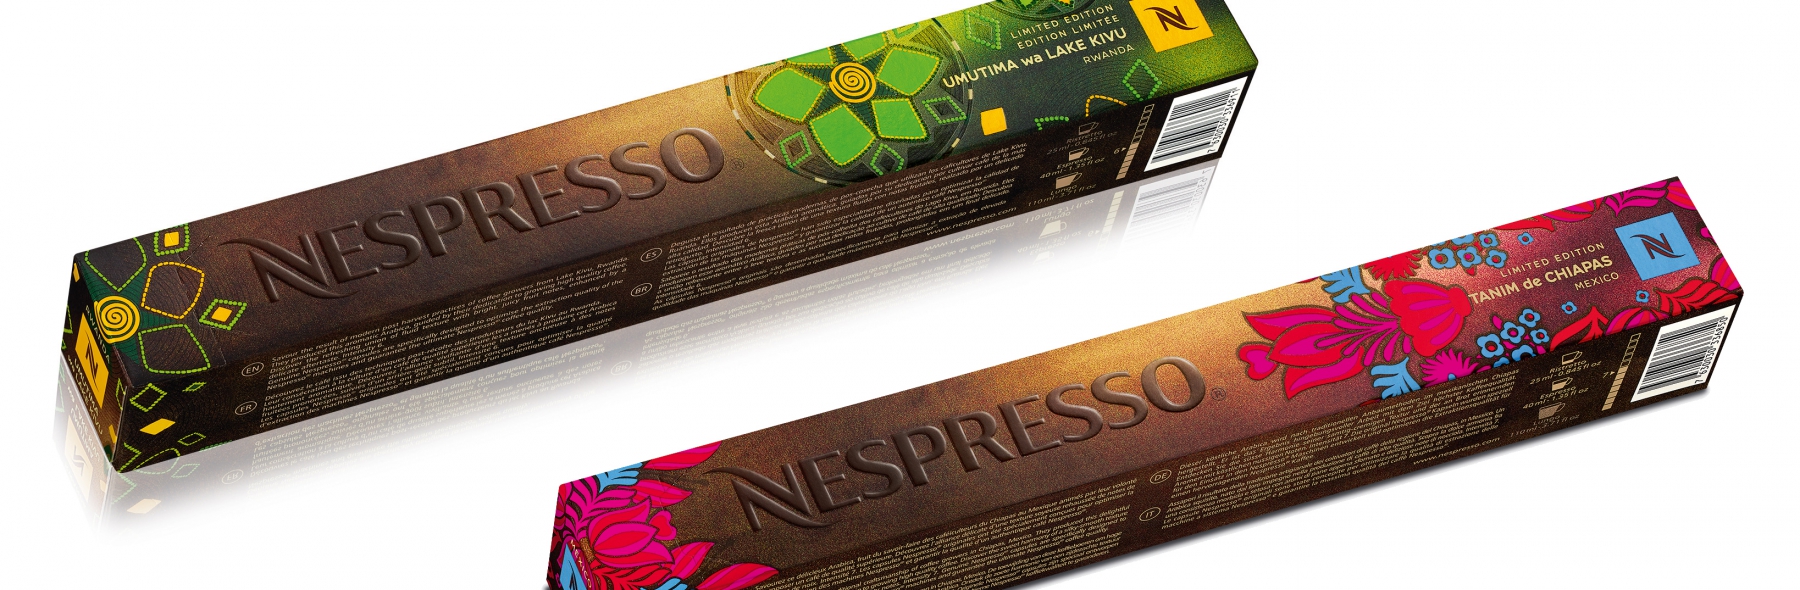 Les grands crus café de Nespresso